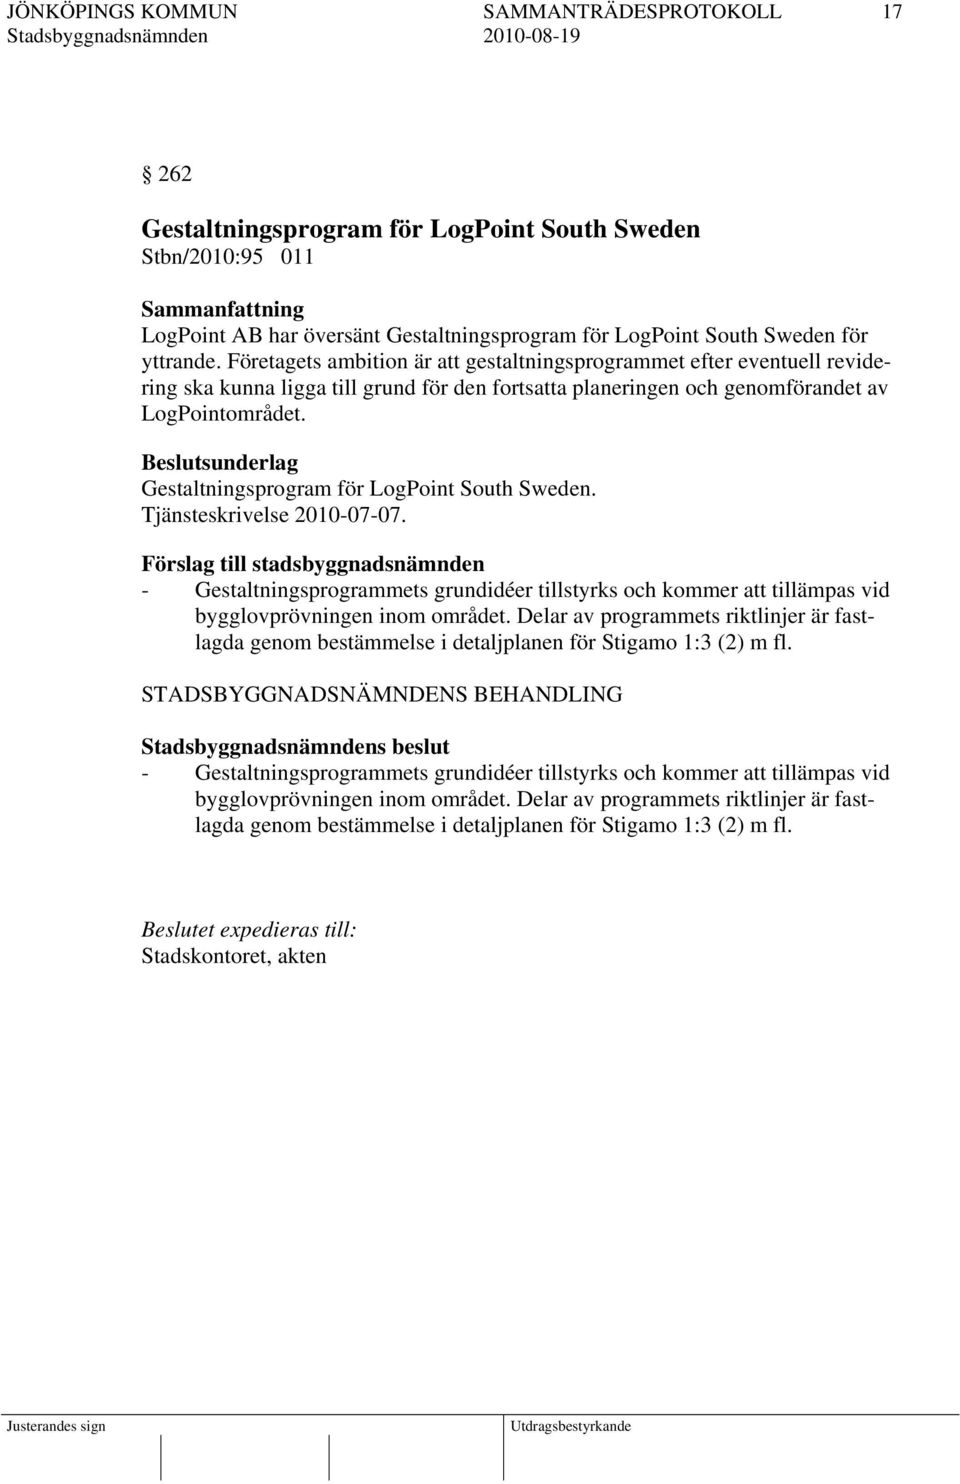 Beslutsunderlag Gestaltningsprogram för LogPoint South Sweden. Tjänsteskrivelse 2010-07-07.